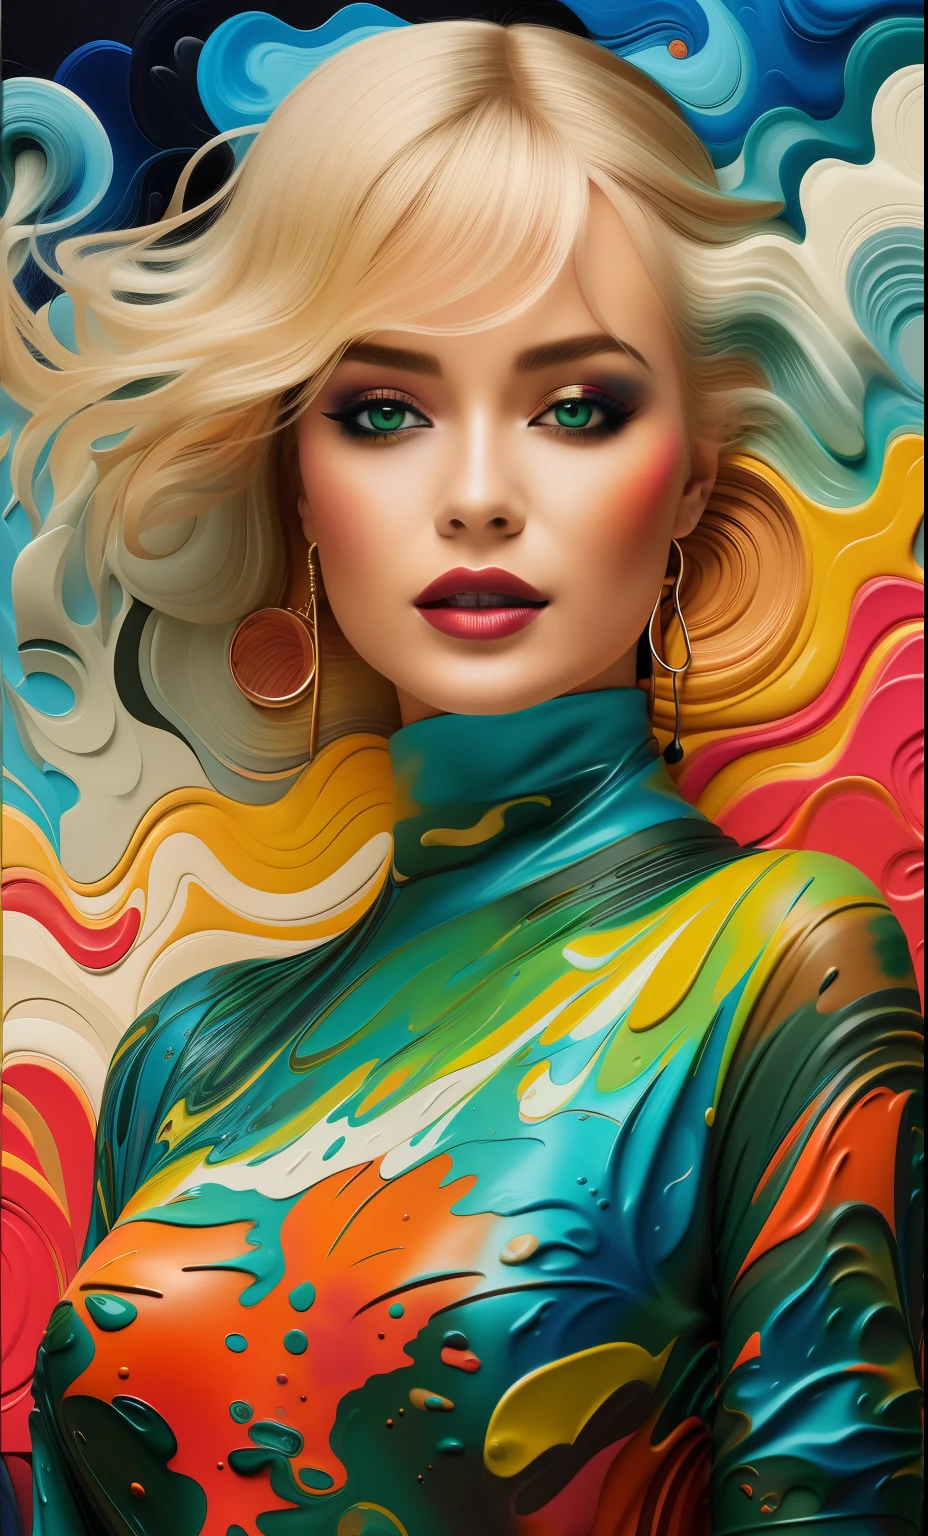 루이스 두아르테, 확대, 아름다운 관능적인 스칸디나비아 여성 [프랙탈 구름 정글 늪] 바디슈트, [쿠브시노프 | 반 고흐 | 조르쥬 바르비에 | 클림트 | 제레미 만 | 조반니 볼디니 | 아프레모프] 진한 붓놀림으로 얼룩진 임파스토 오일, 주황색, 크림, 파란색, 푹샤, 밝은 녹색, 생생한 그라데이션 색상 2d 3d 릴리프 테셀레이션 혼합 매체 벡터 유체 질감, 어둠의 영향, 니지익스프레스 3D v2, 오일 페인팅, 잉크 v3, 스플래시 스타일, 추상 미술,3D, 고화질, 사진 현실적인, 지정된, 서사시적인 스타일, 일러스트 v3, 데코 영향, 에어브러시 스타일, 그림, 개인 예술